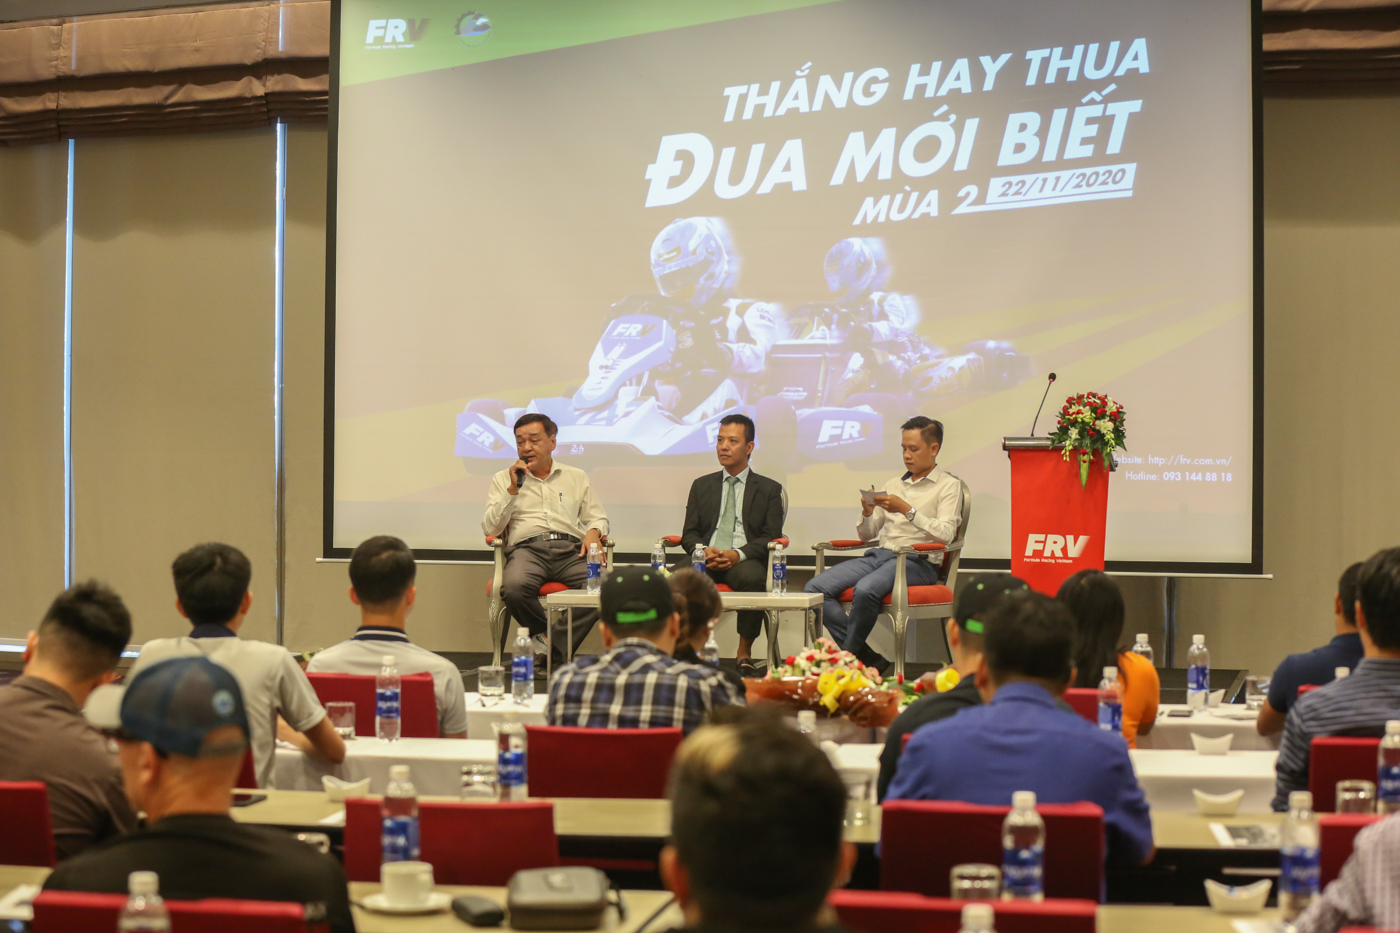 Sắp có giải đua xe Go-Kart liên tục trong 2 giờ đầu tiên tại Việt Nam Thắng-hay-thua-đua-mới-biết-mùa-2-Go-Kart (1).JPG